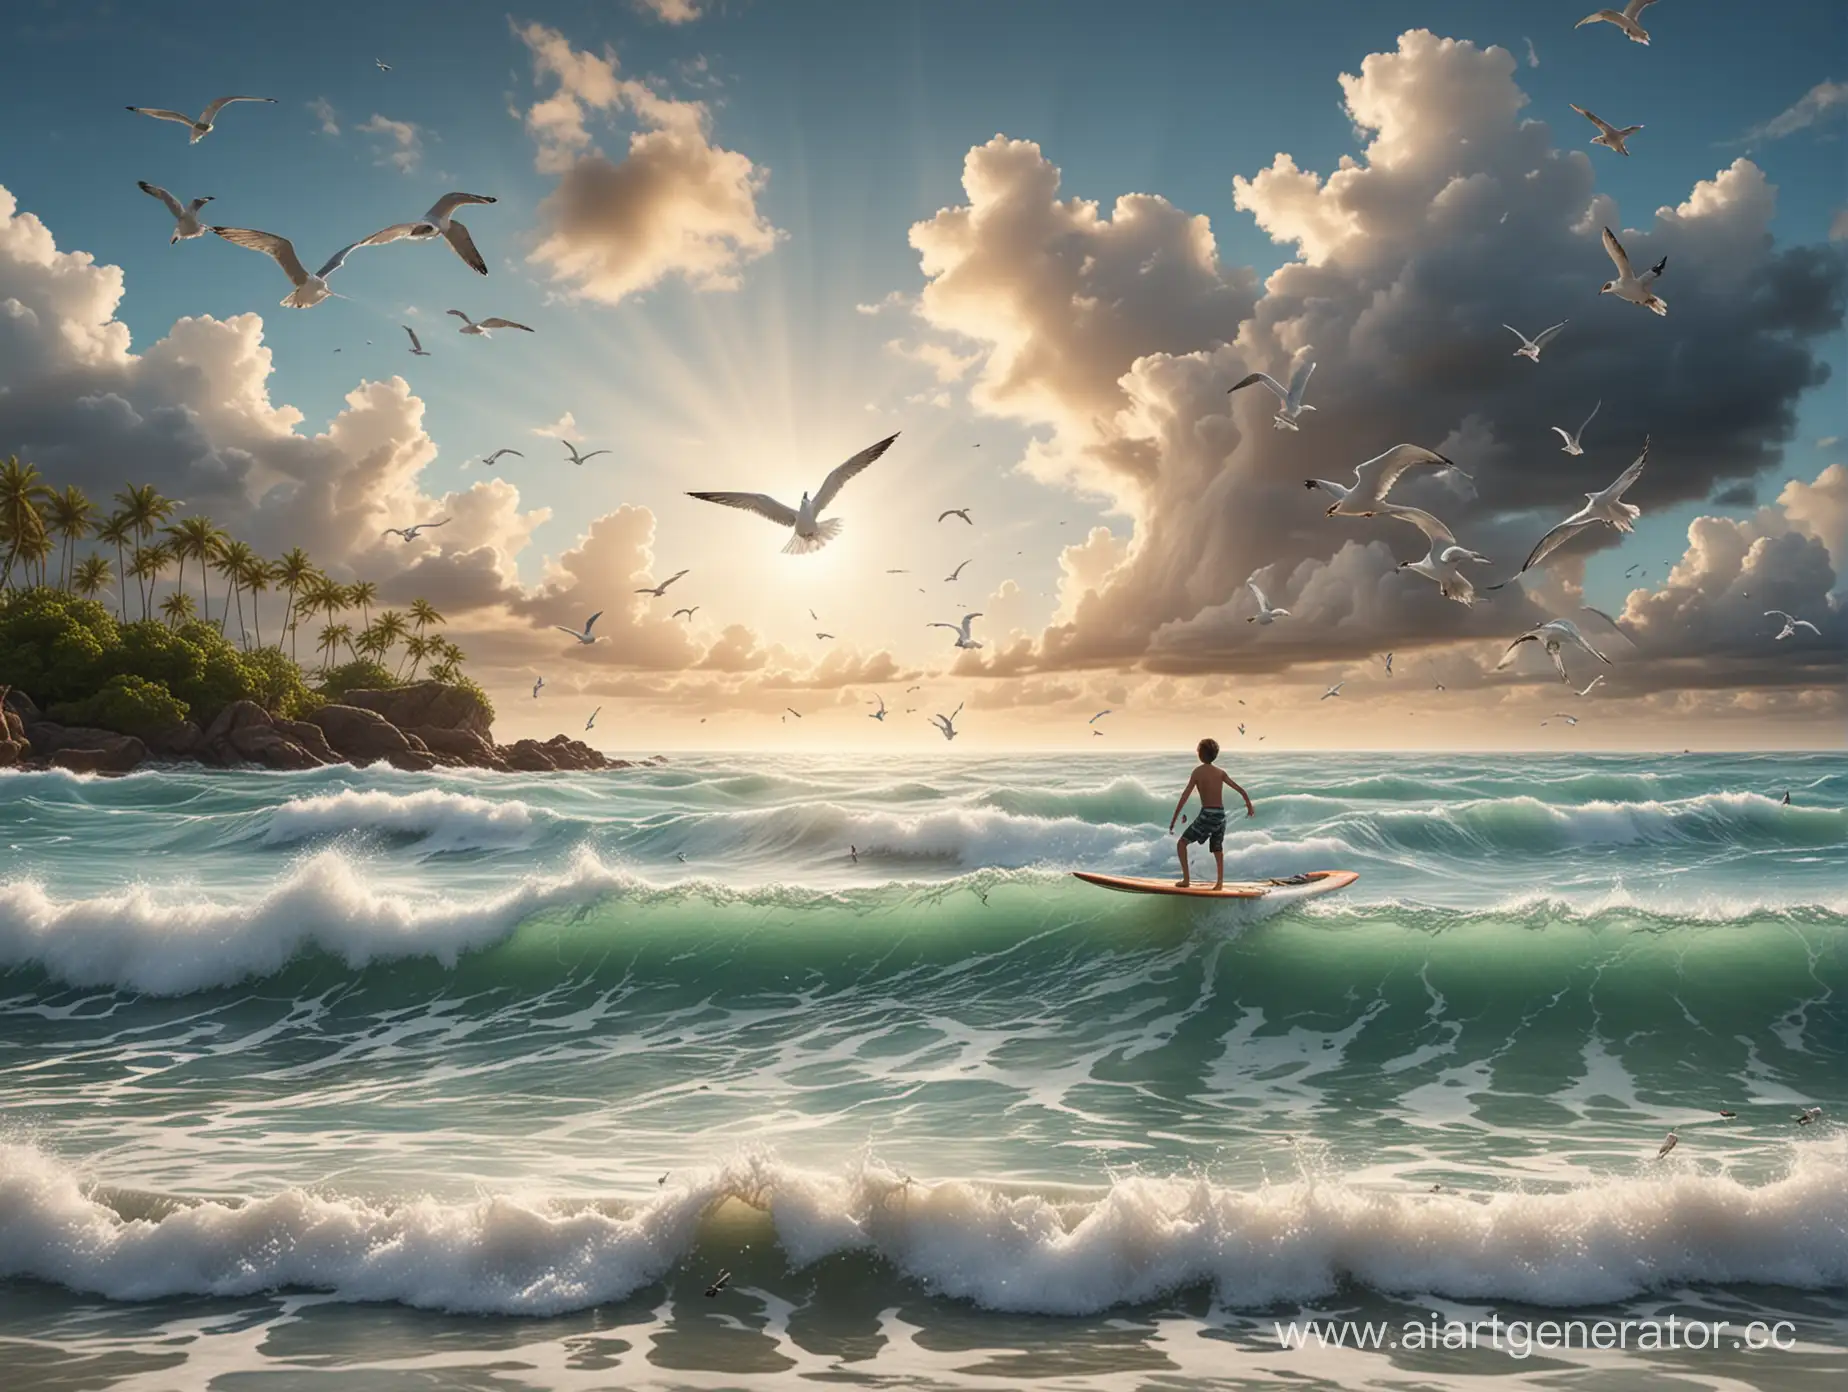 Доска для серфинга плывет по волнам моря, на доске сидит маленький мальчик, вокруг летают чайки, рядом коралловый островок, на небе облака, фон размытый, очень реалистично